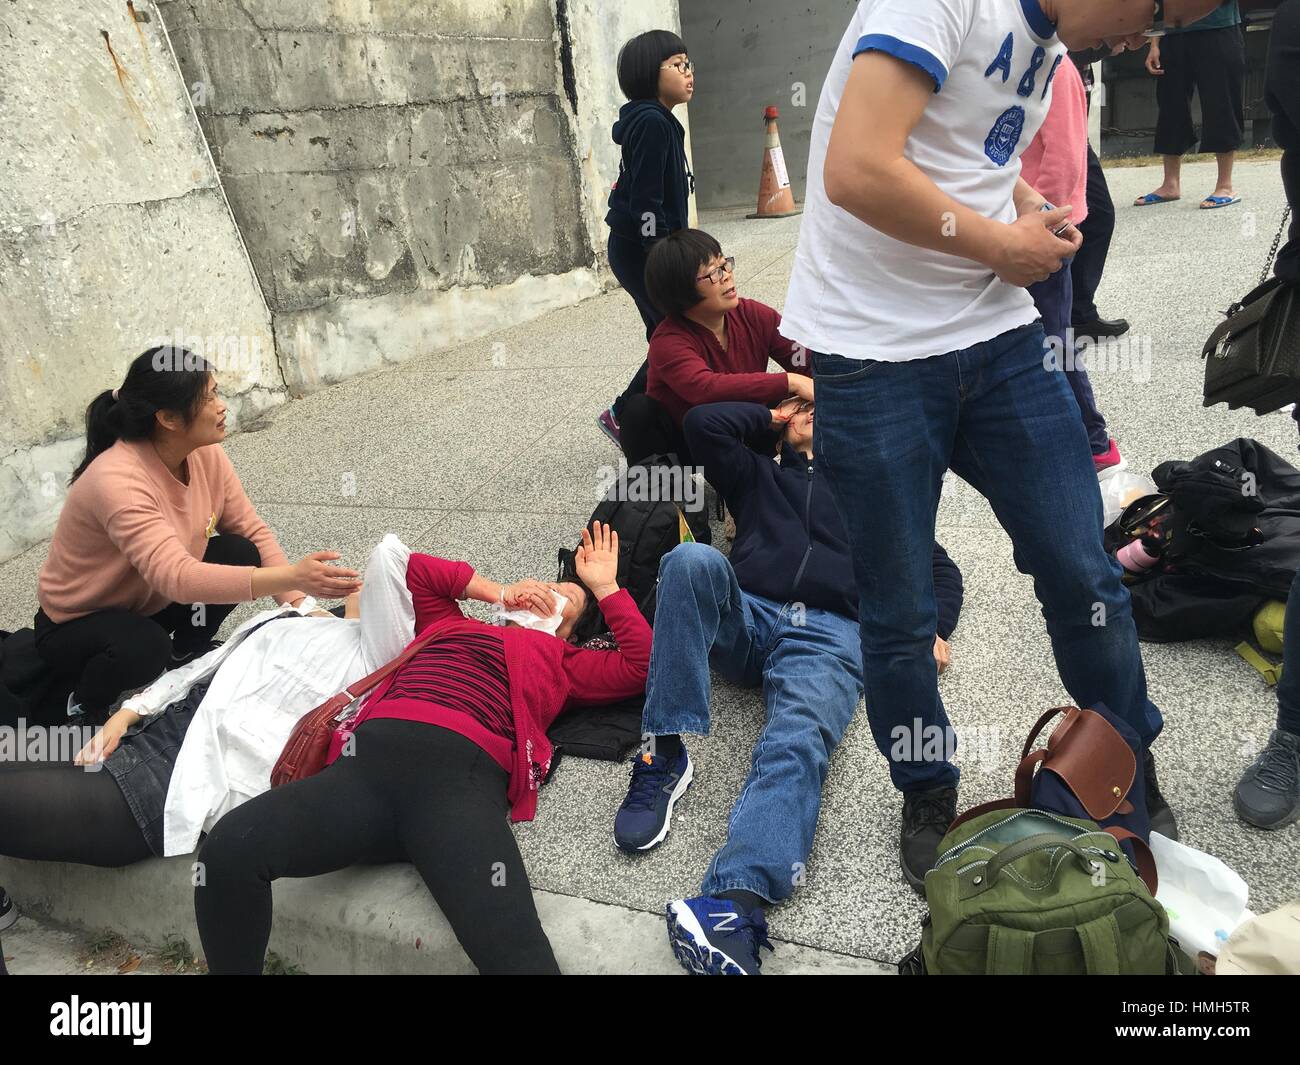 Kaohsiung. 4. Februar 2017. Foto aufgenommen am 4. Februar 2017 zeigt einige der Passagiere Verletzte bei Busunfall in Kaohsiung, Taiwan Südost-China. Ein Bus mit Touristen aus dem chinesischen Festland stürzte in Kaohsiung Samstag, mit einer Reihe von Menschen verletzt. Bildnachweis: Xinhua/Alamy Live-Nachrichten Stockfoto